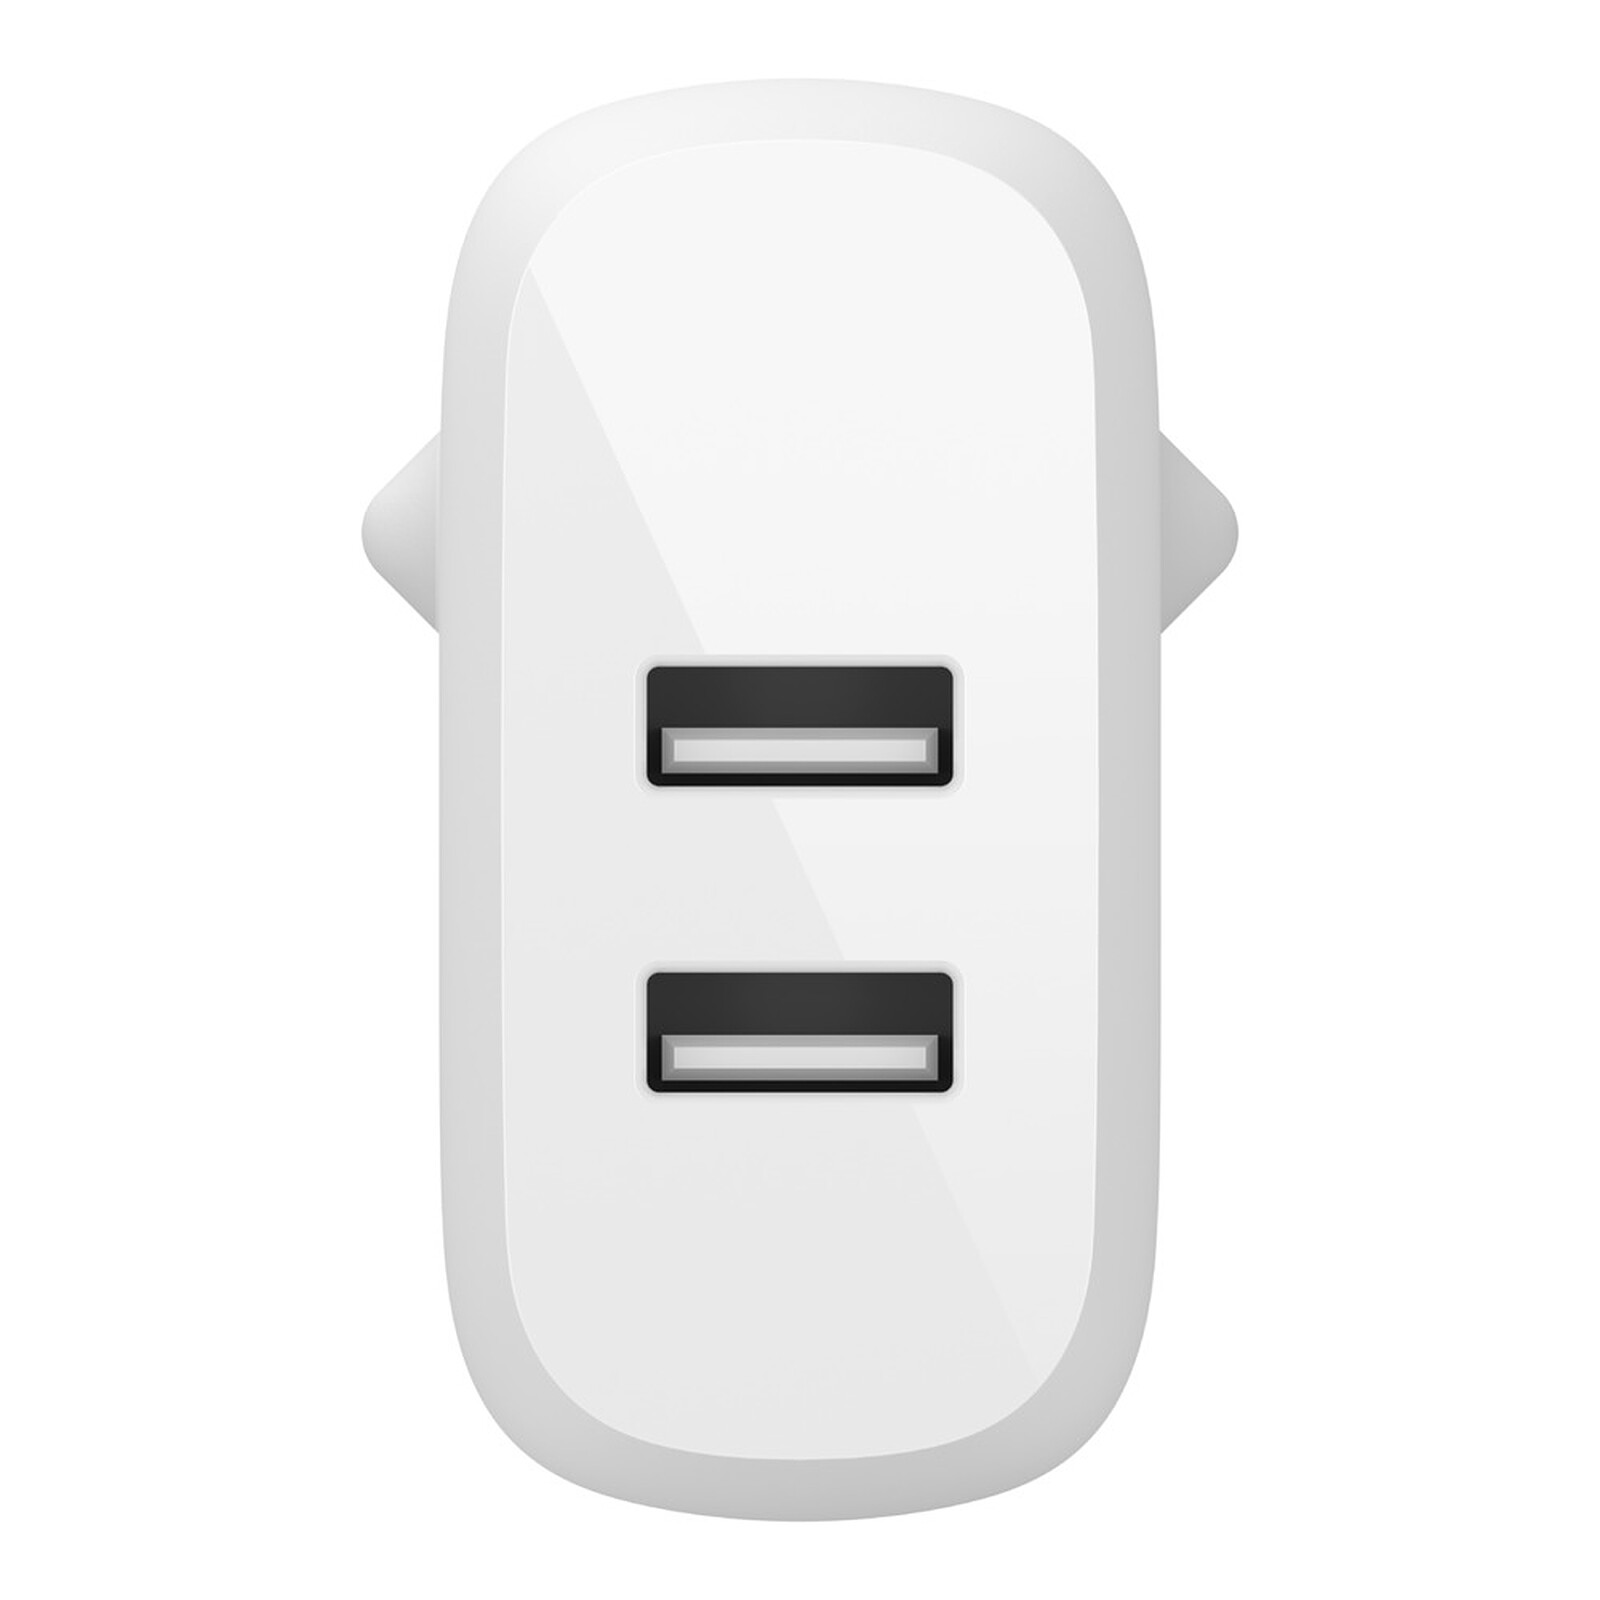 Belkin Boost Charger 2-Porte USB-C PD (25W) + USB-A (12W) caricatore da auto  per accendisigari (nero) - Caricabatterie accendisigari - Garanzia 3 anni  LDLC